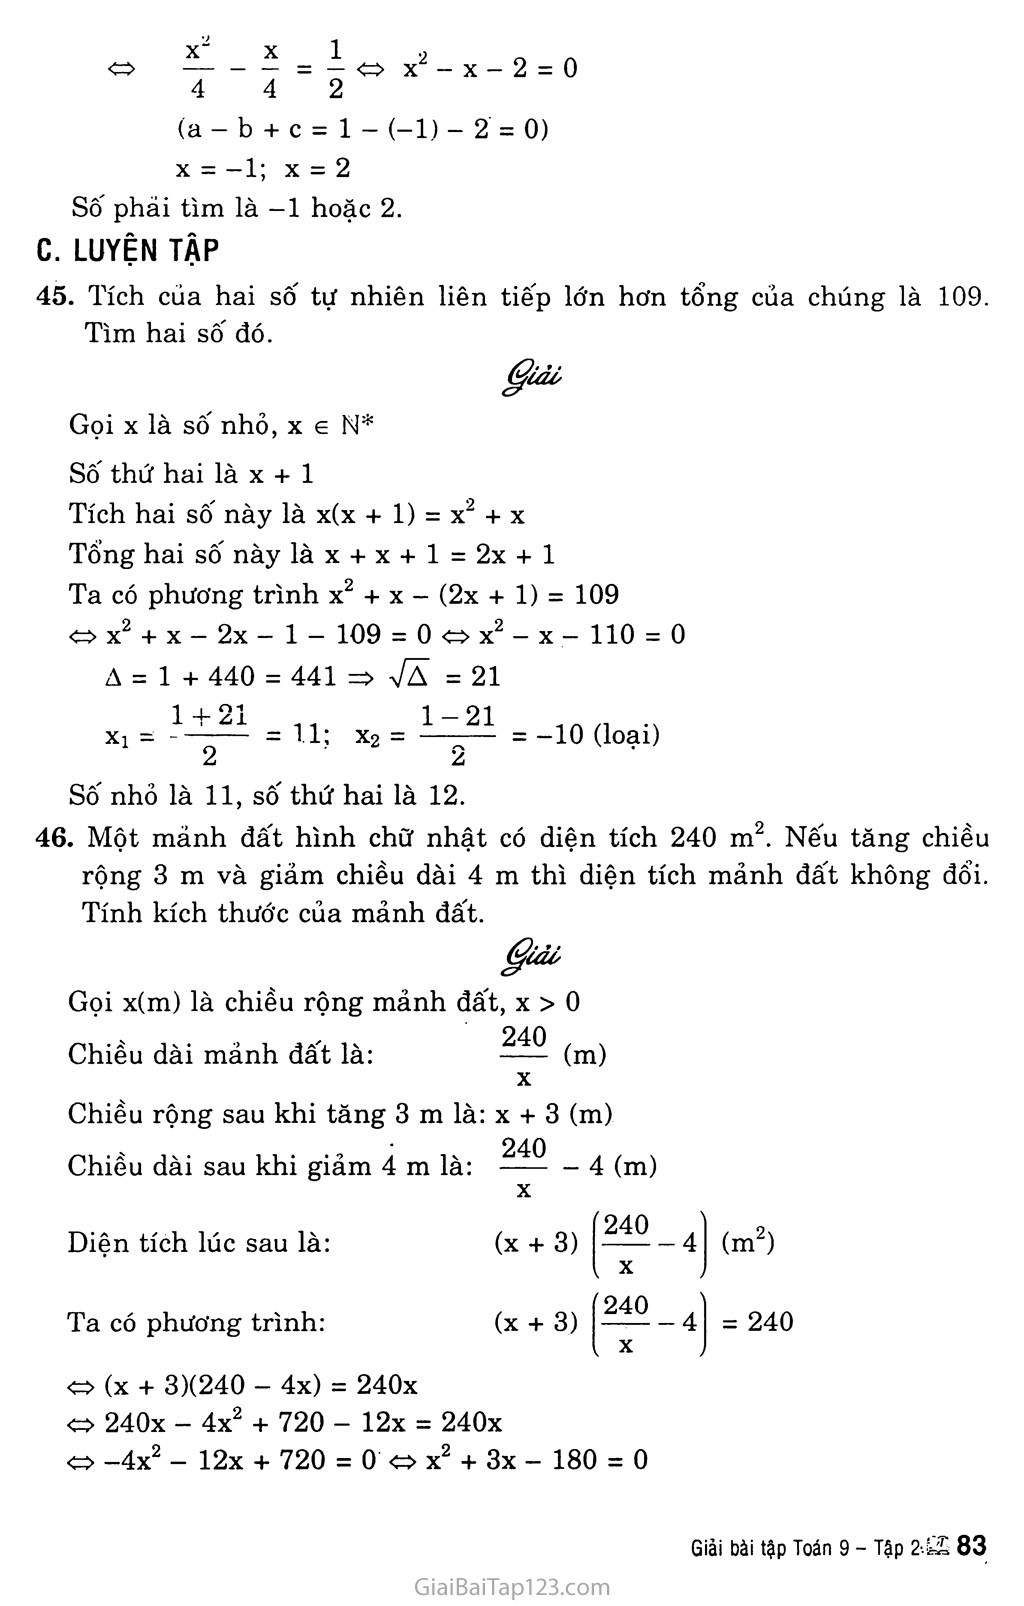 Bài 8. Giải bài toán bằng cách lập phương trình trang 4